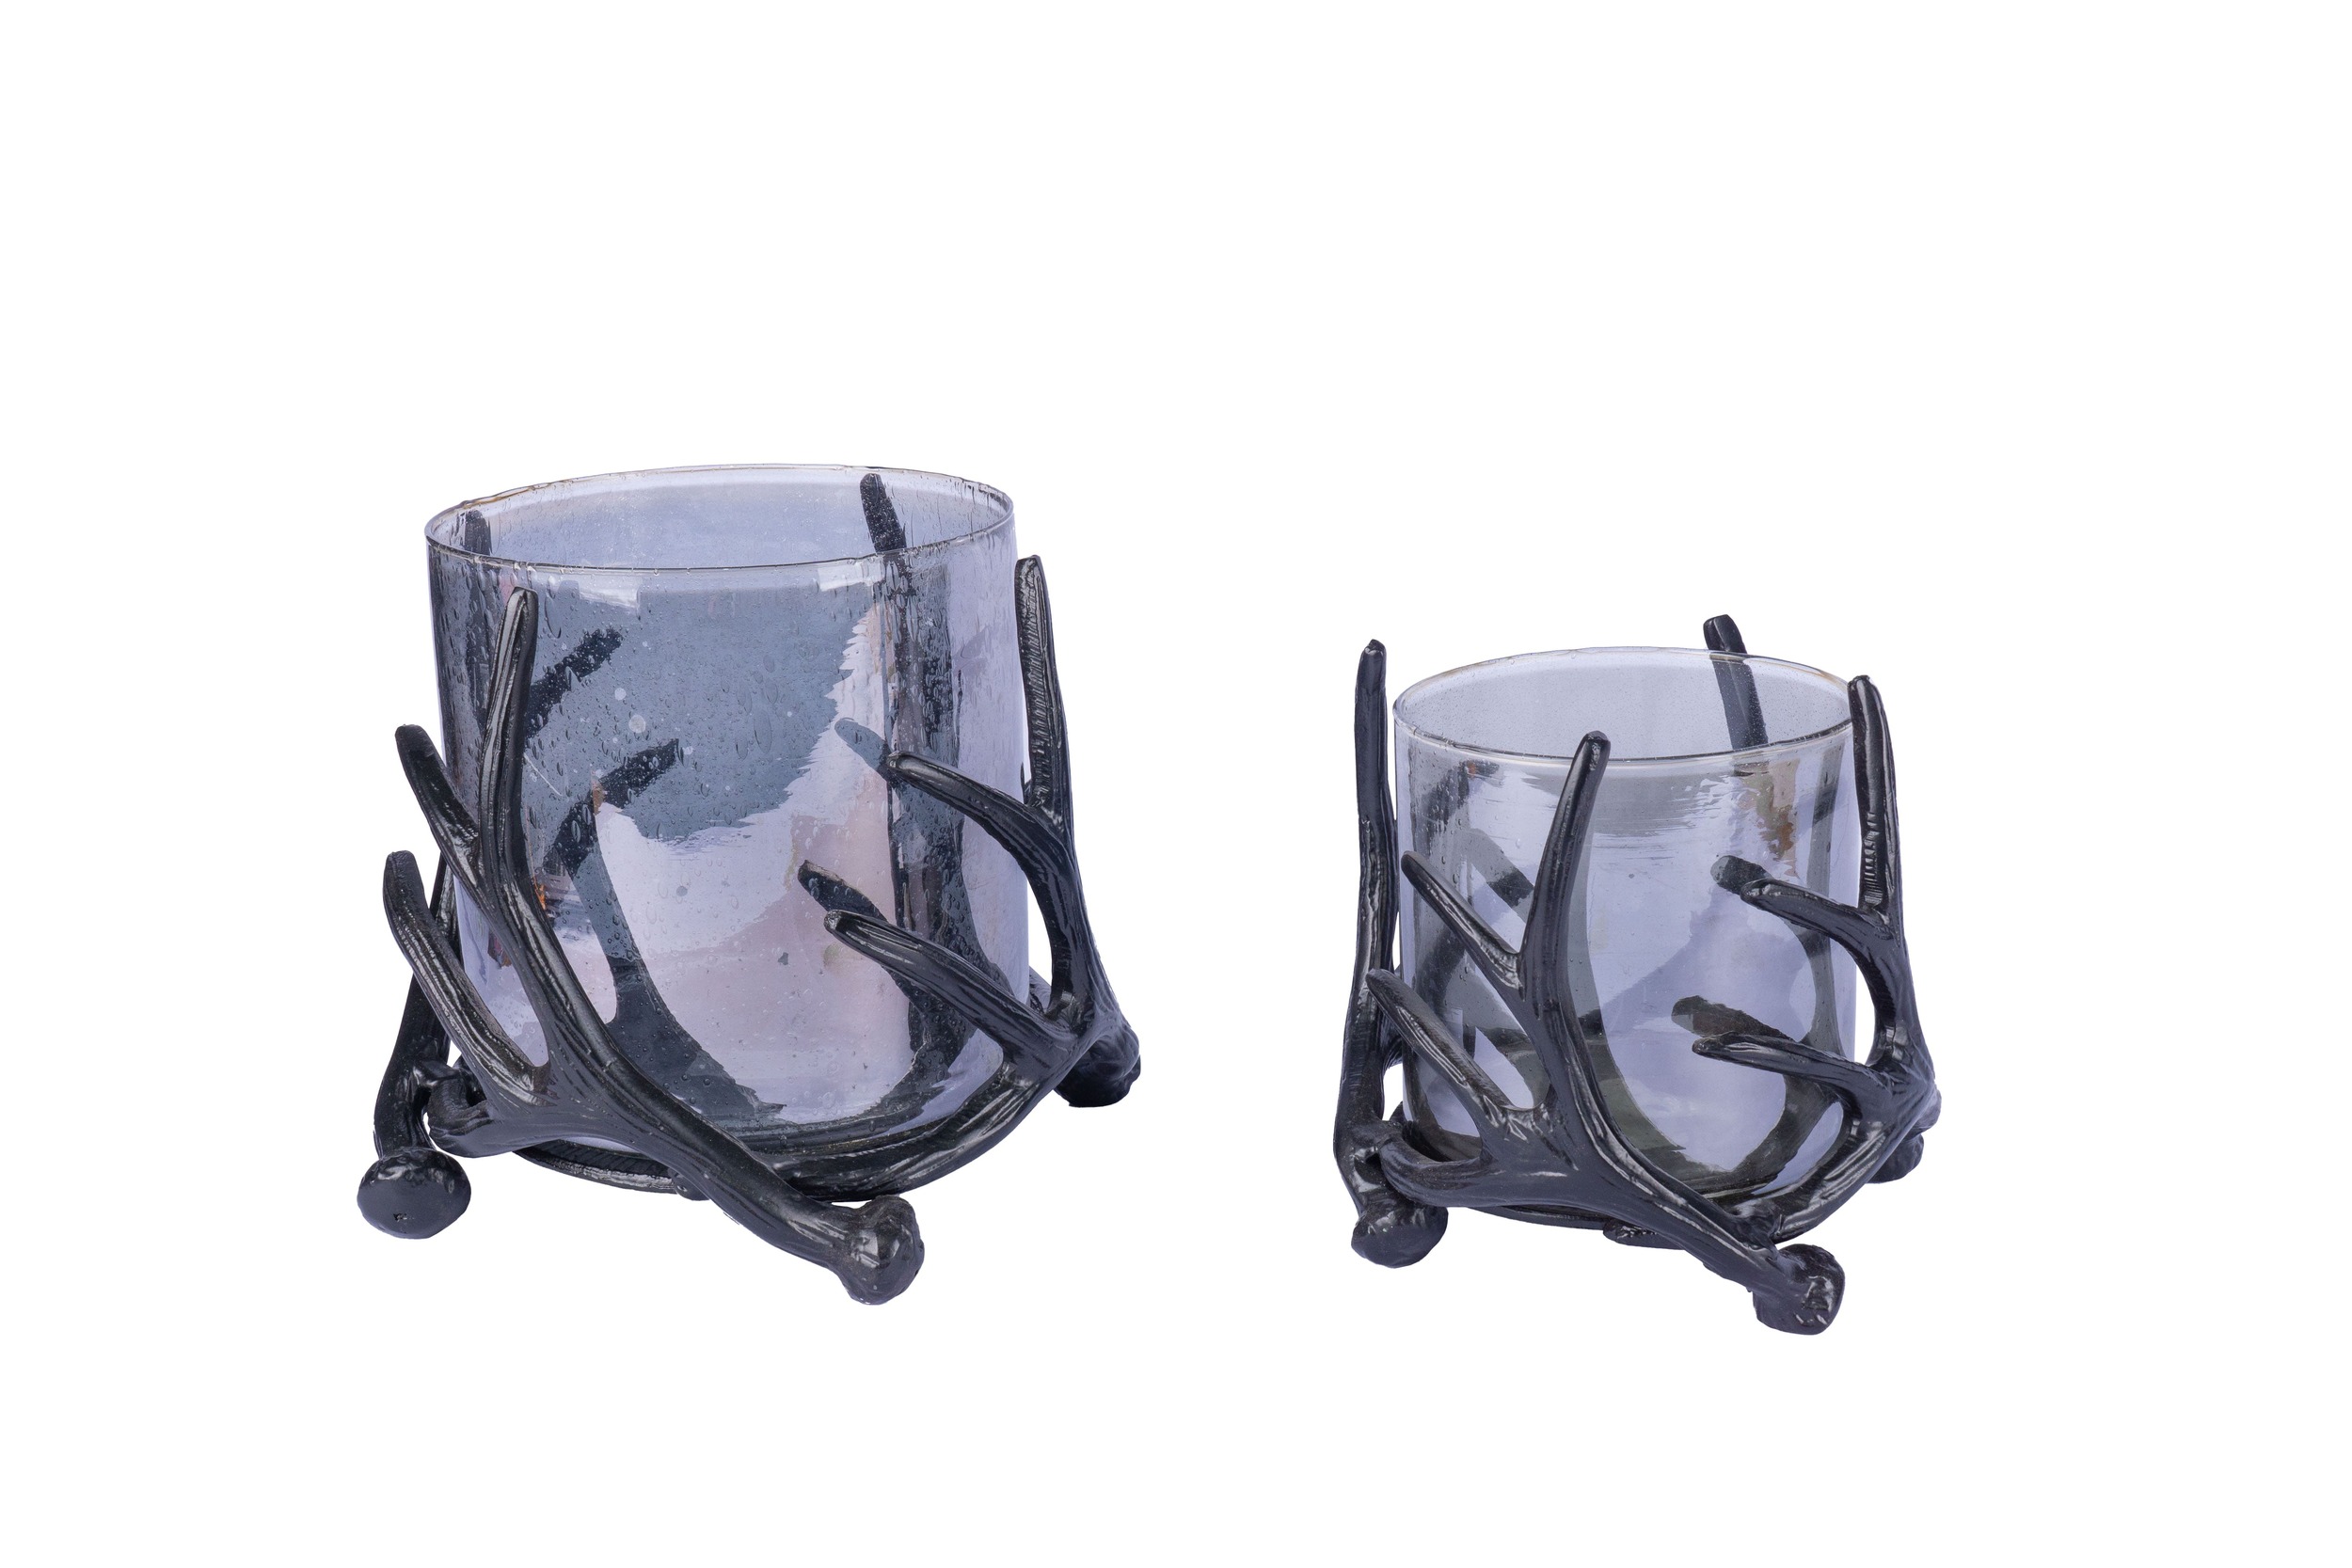 Windlicht Glas grau mit Geweihgestell Alu matt schwarz 25x25x25cm